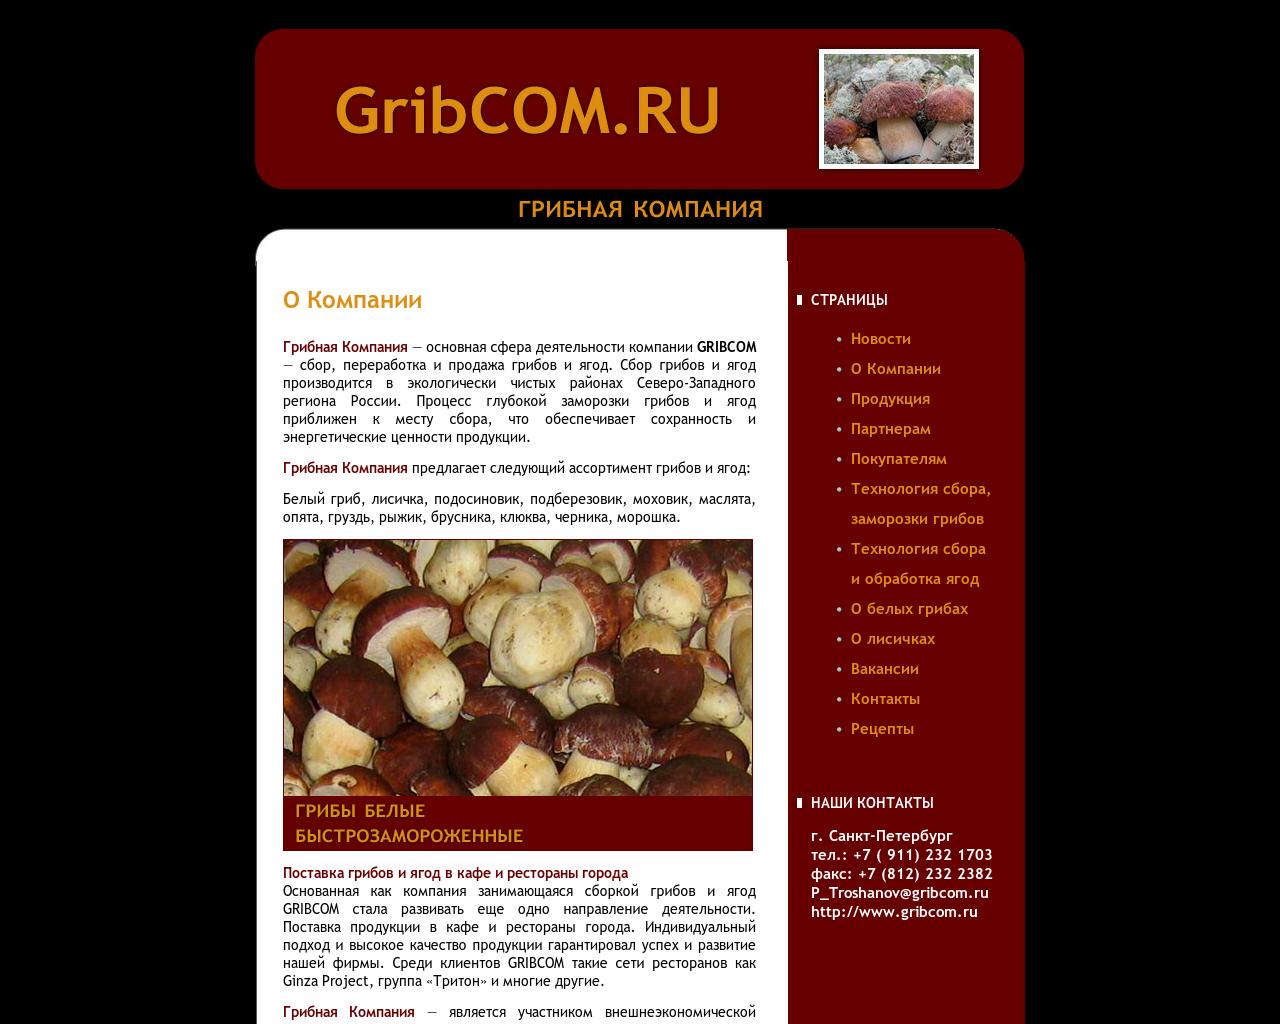 Изображение сайта gribcom.ru в разрешении 1280x1024